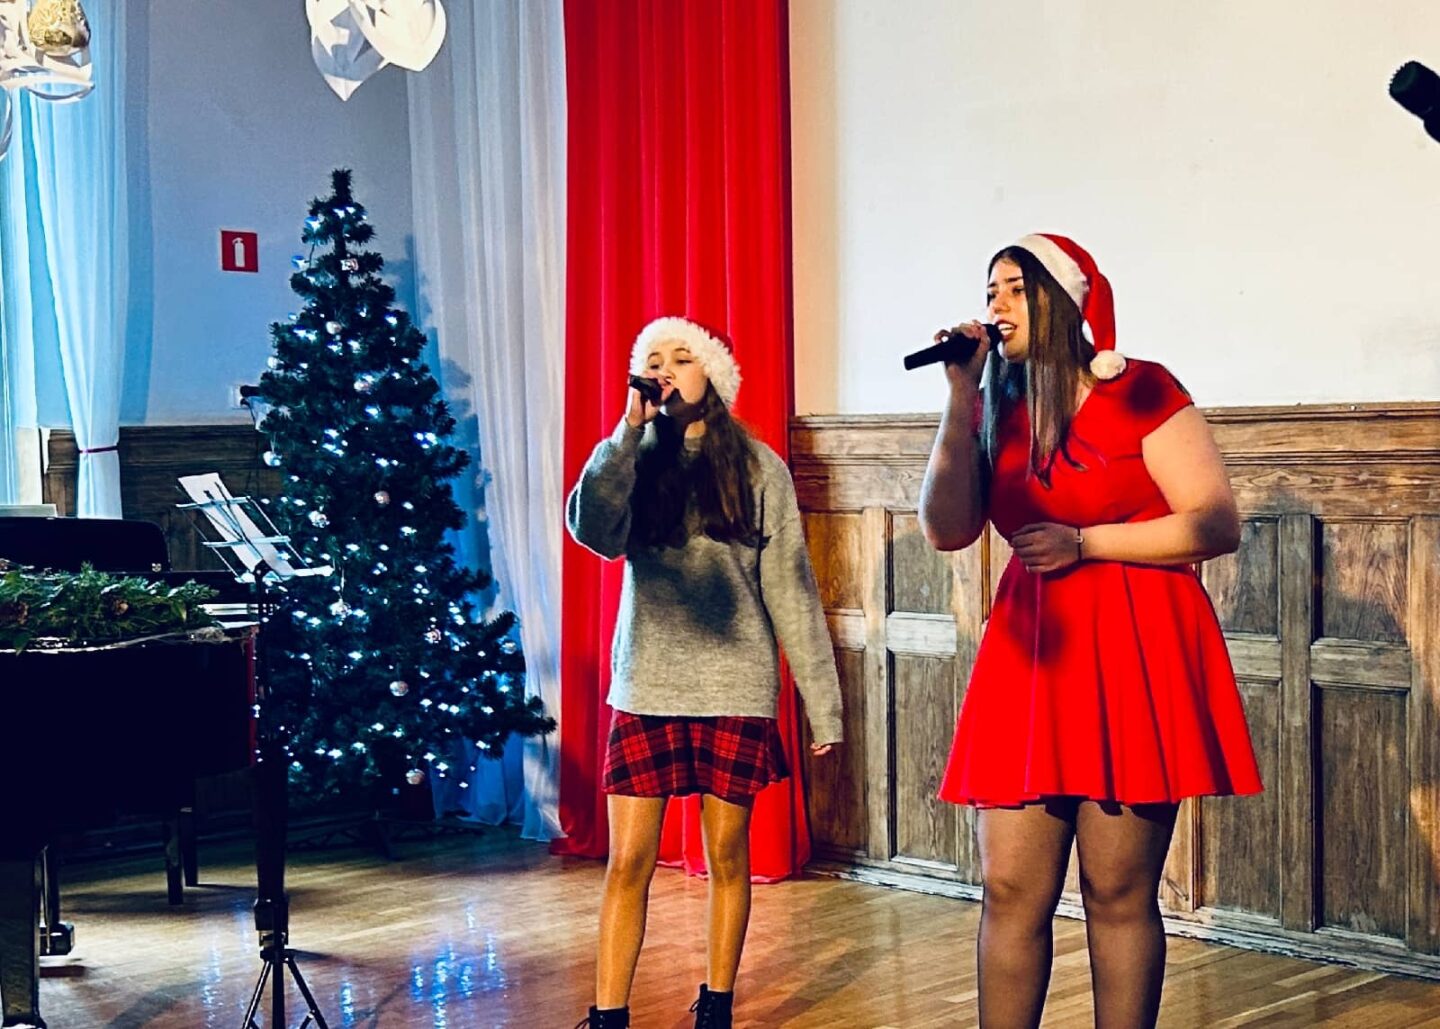 Za zdjęciu uczniowie na scenie w szkolnej auli wykonuje utwór podczas świątecznego koncertu.